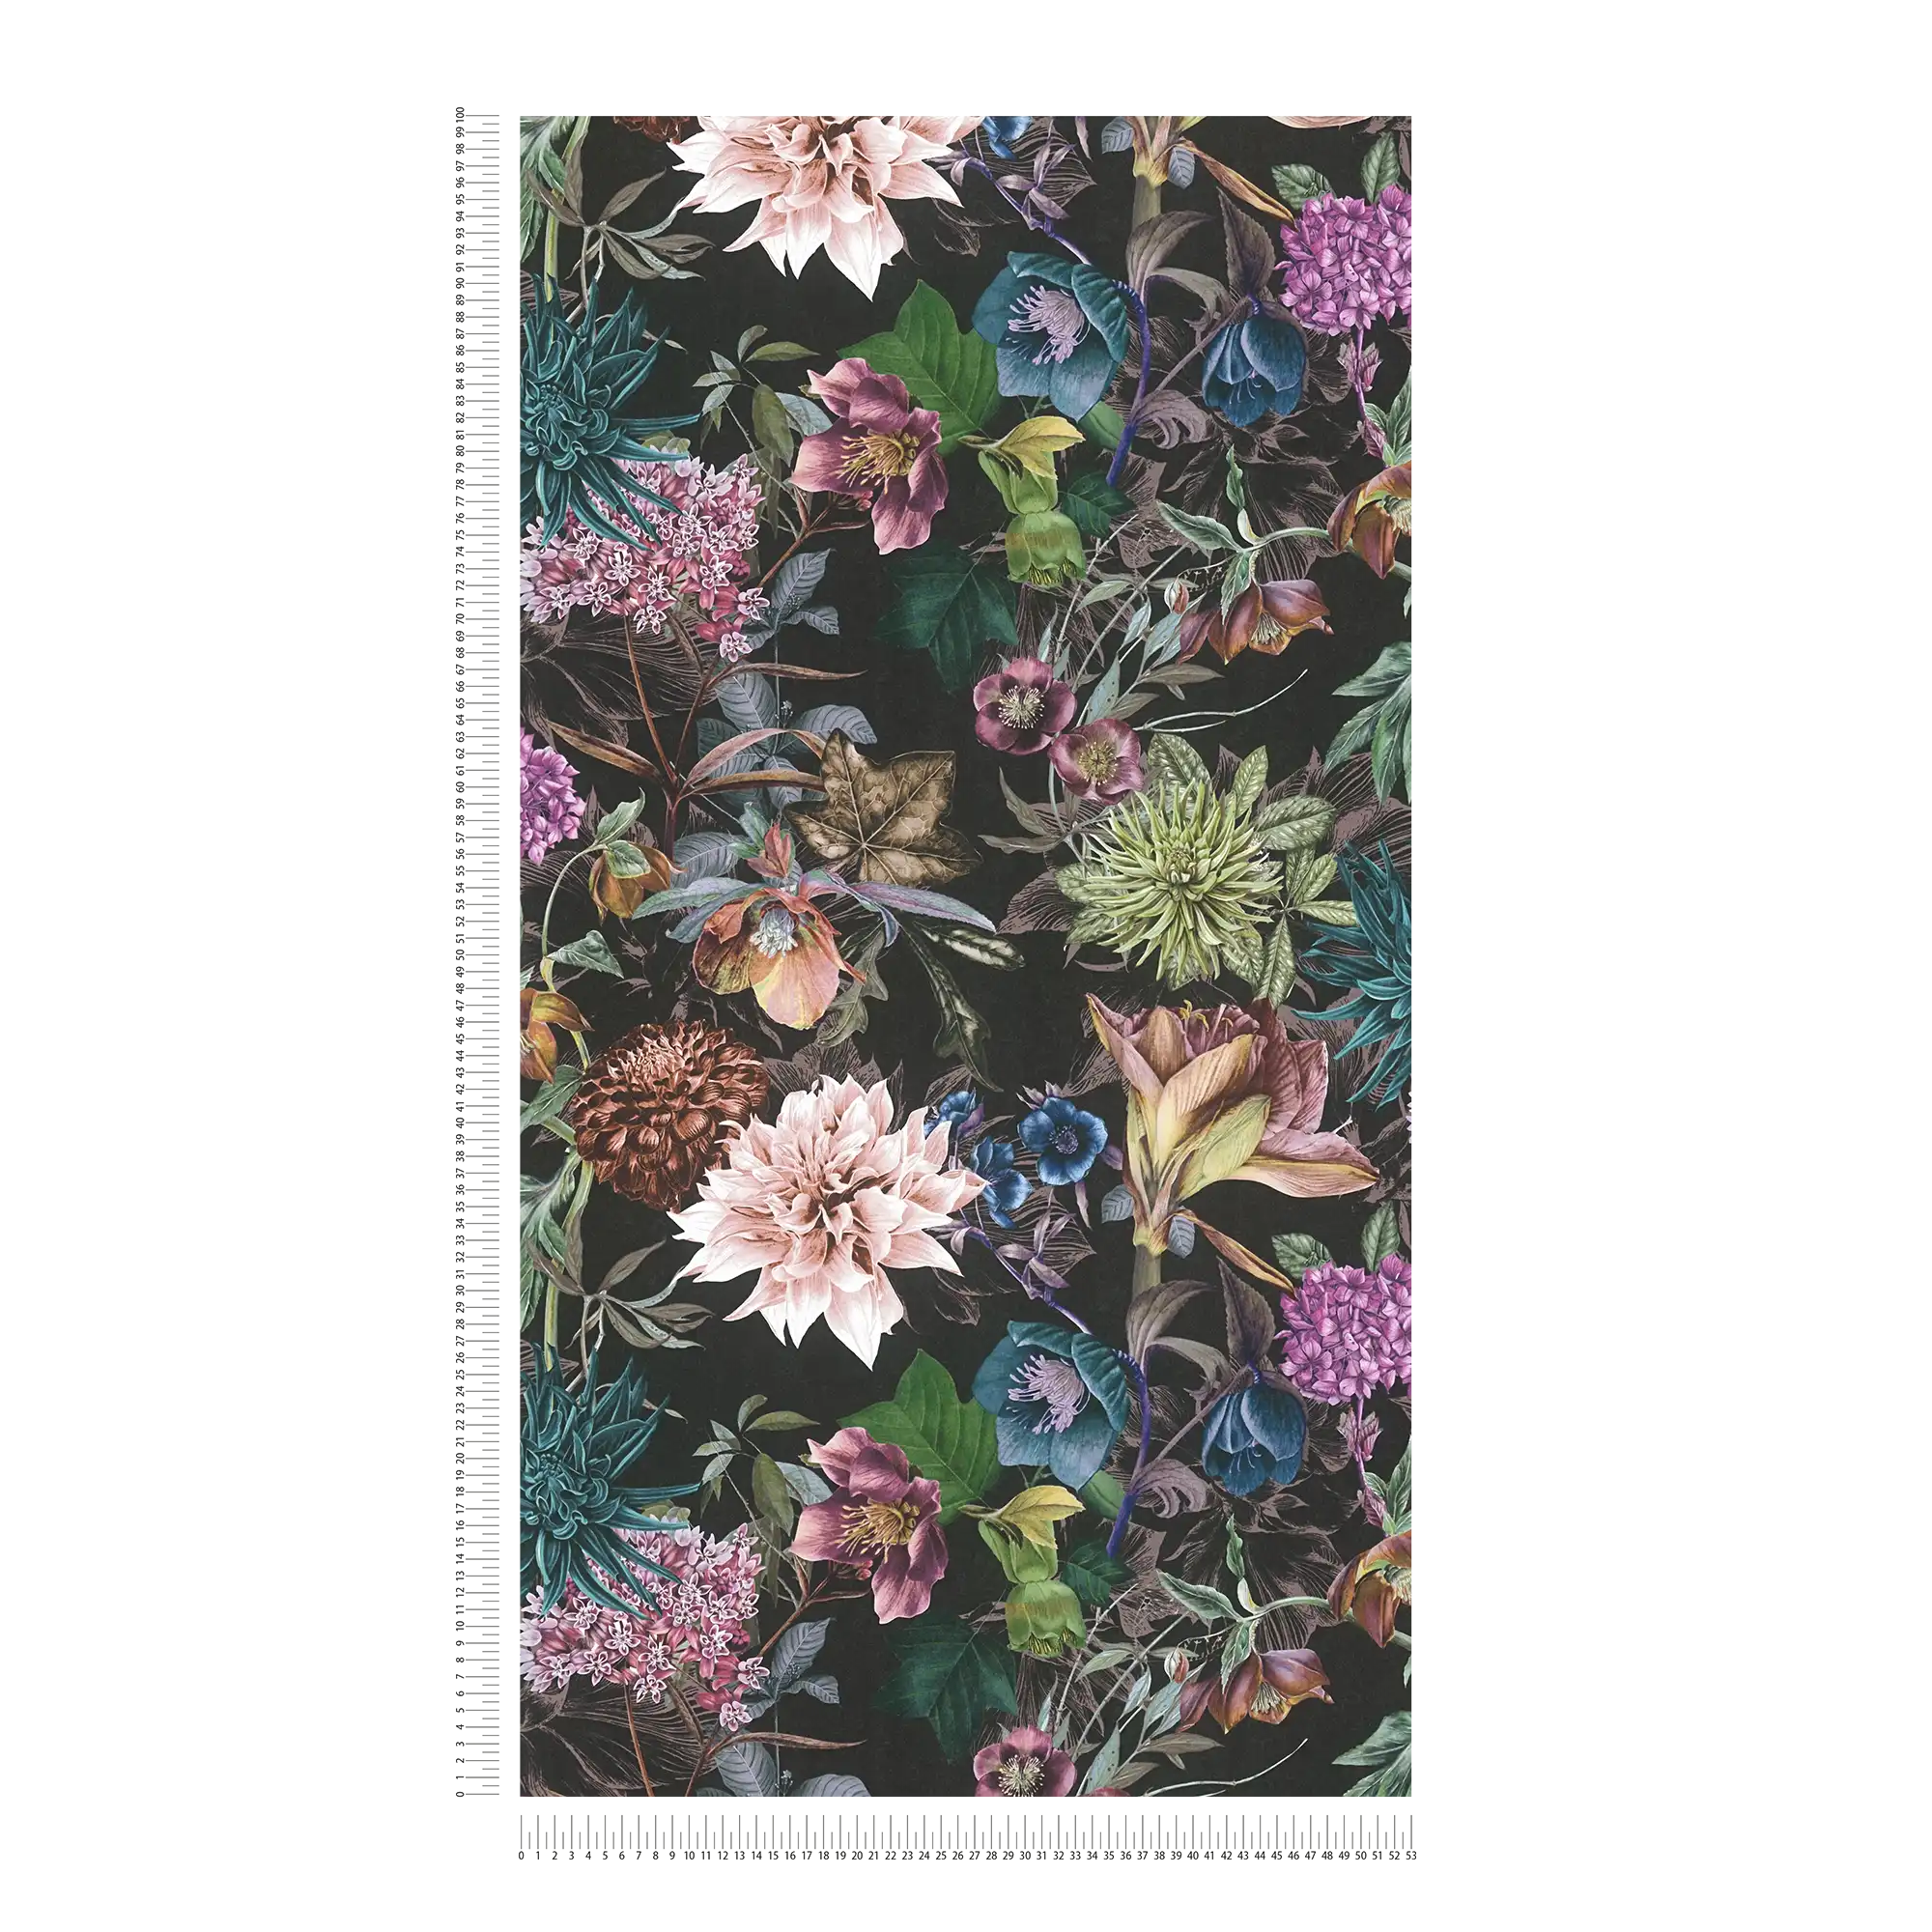             Papel Pintado Floral con Fondo Negro - Colorido, Negro
        